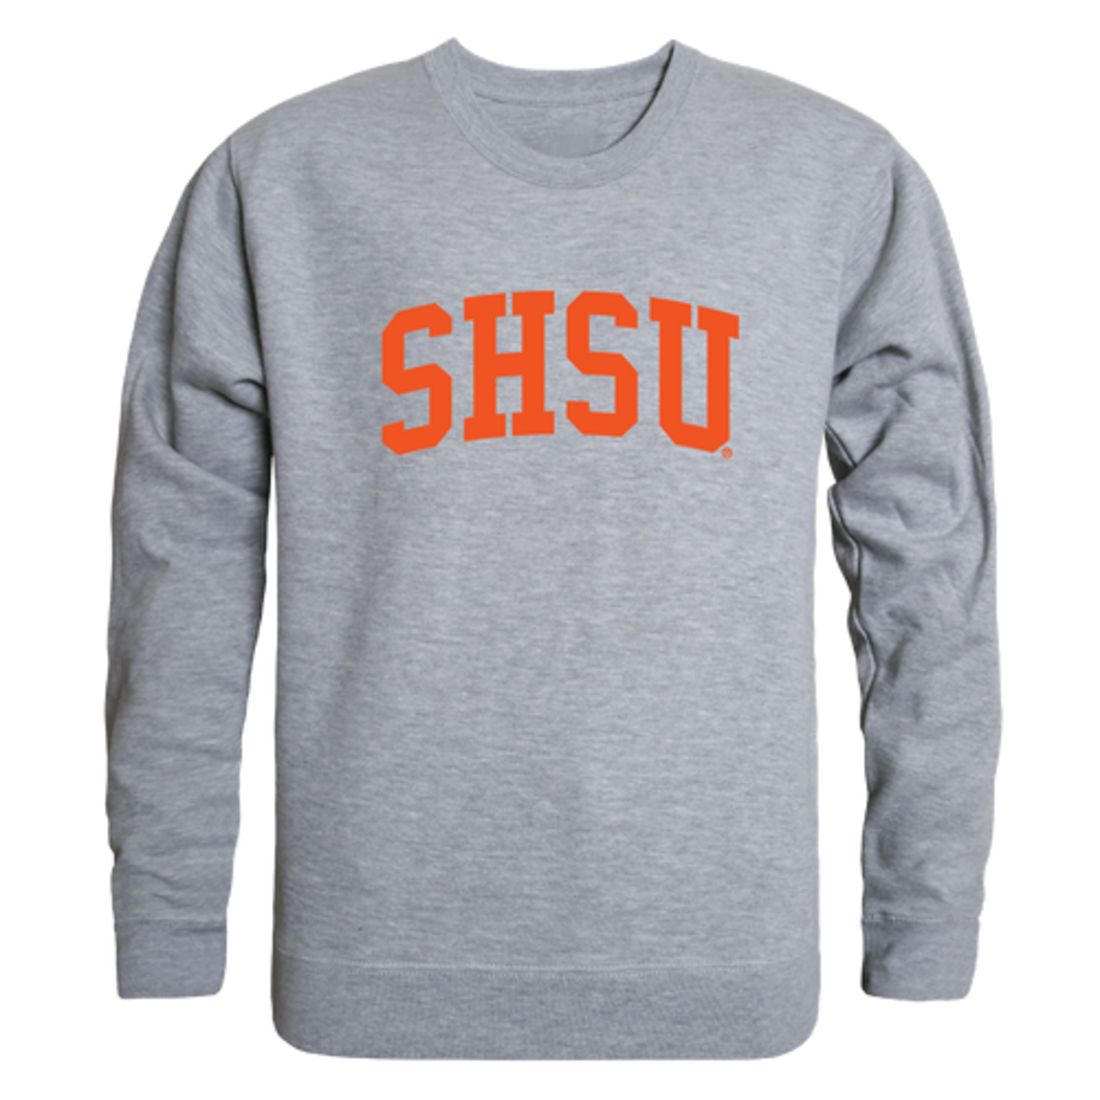 Sam Houston State University Apparel & Spirit Store Sweatshirts, Sam  Houston State University Apparel & Spirit Store Crew Sweatshirts